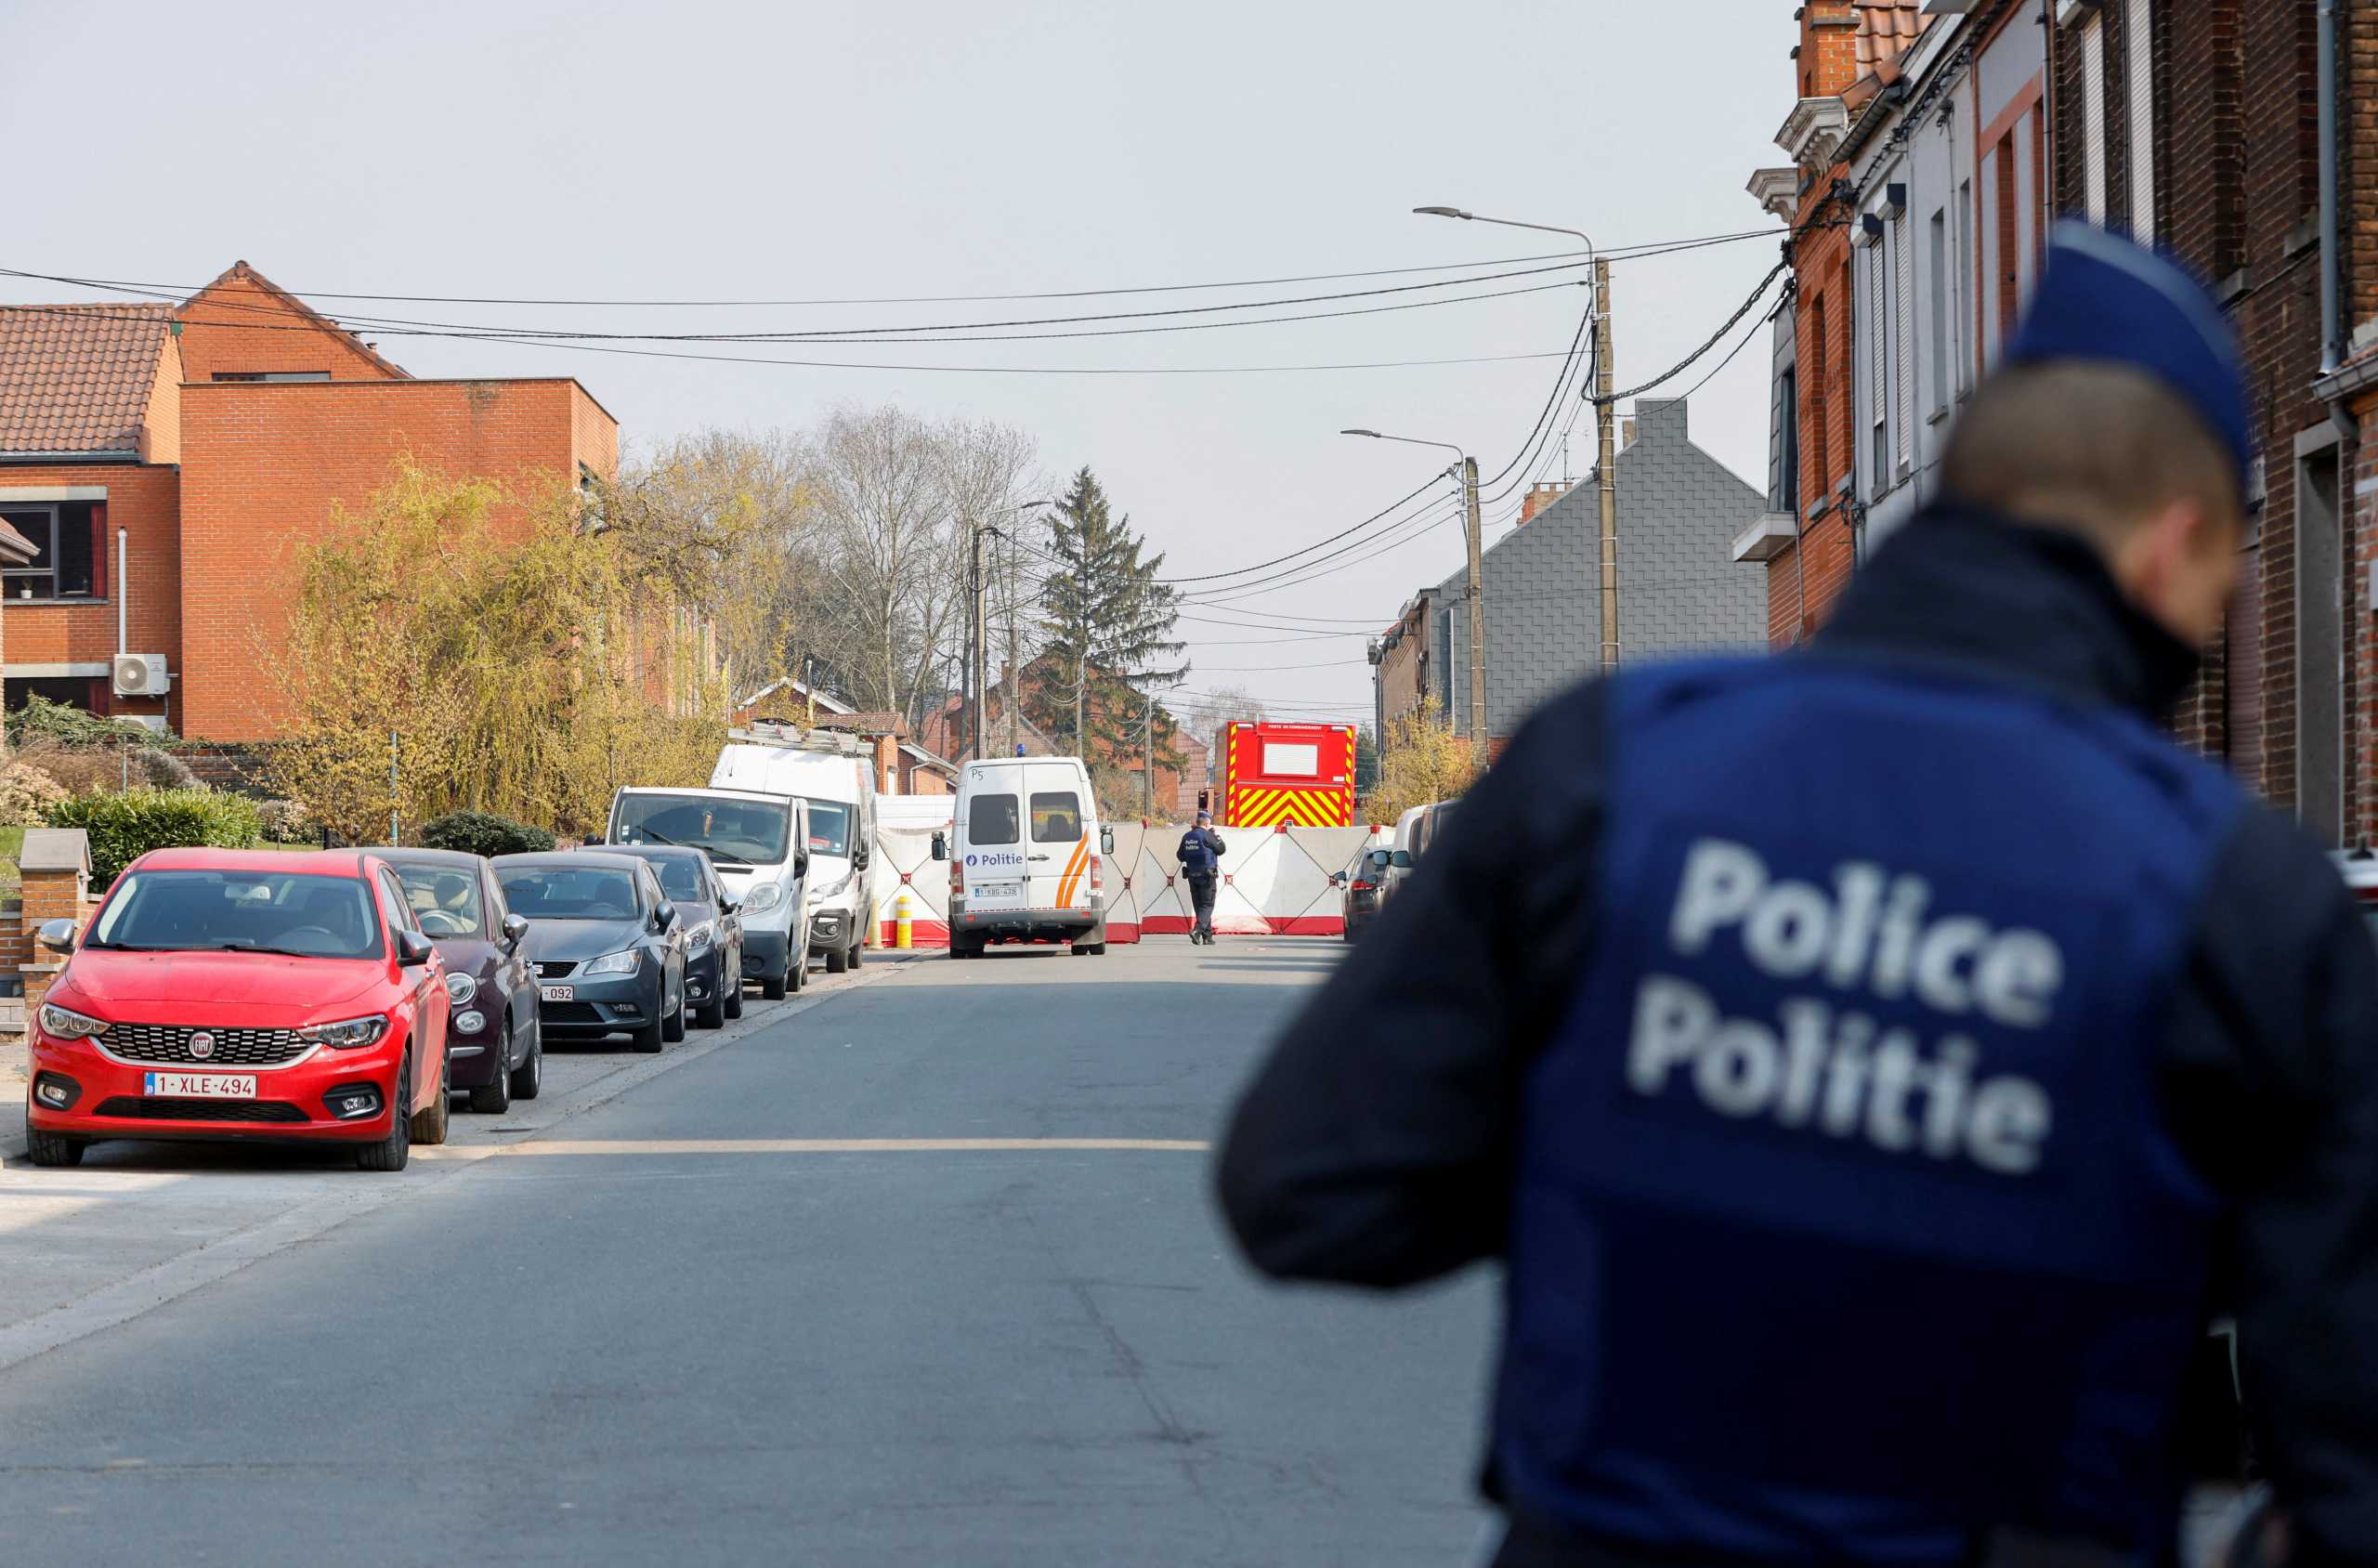 Βέλγιο: Δύο άτομα επέβαιναν στο ΙΧ που έπεσε σε πλήθος σκορπίζοντας τον θάνατο